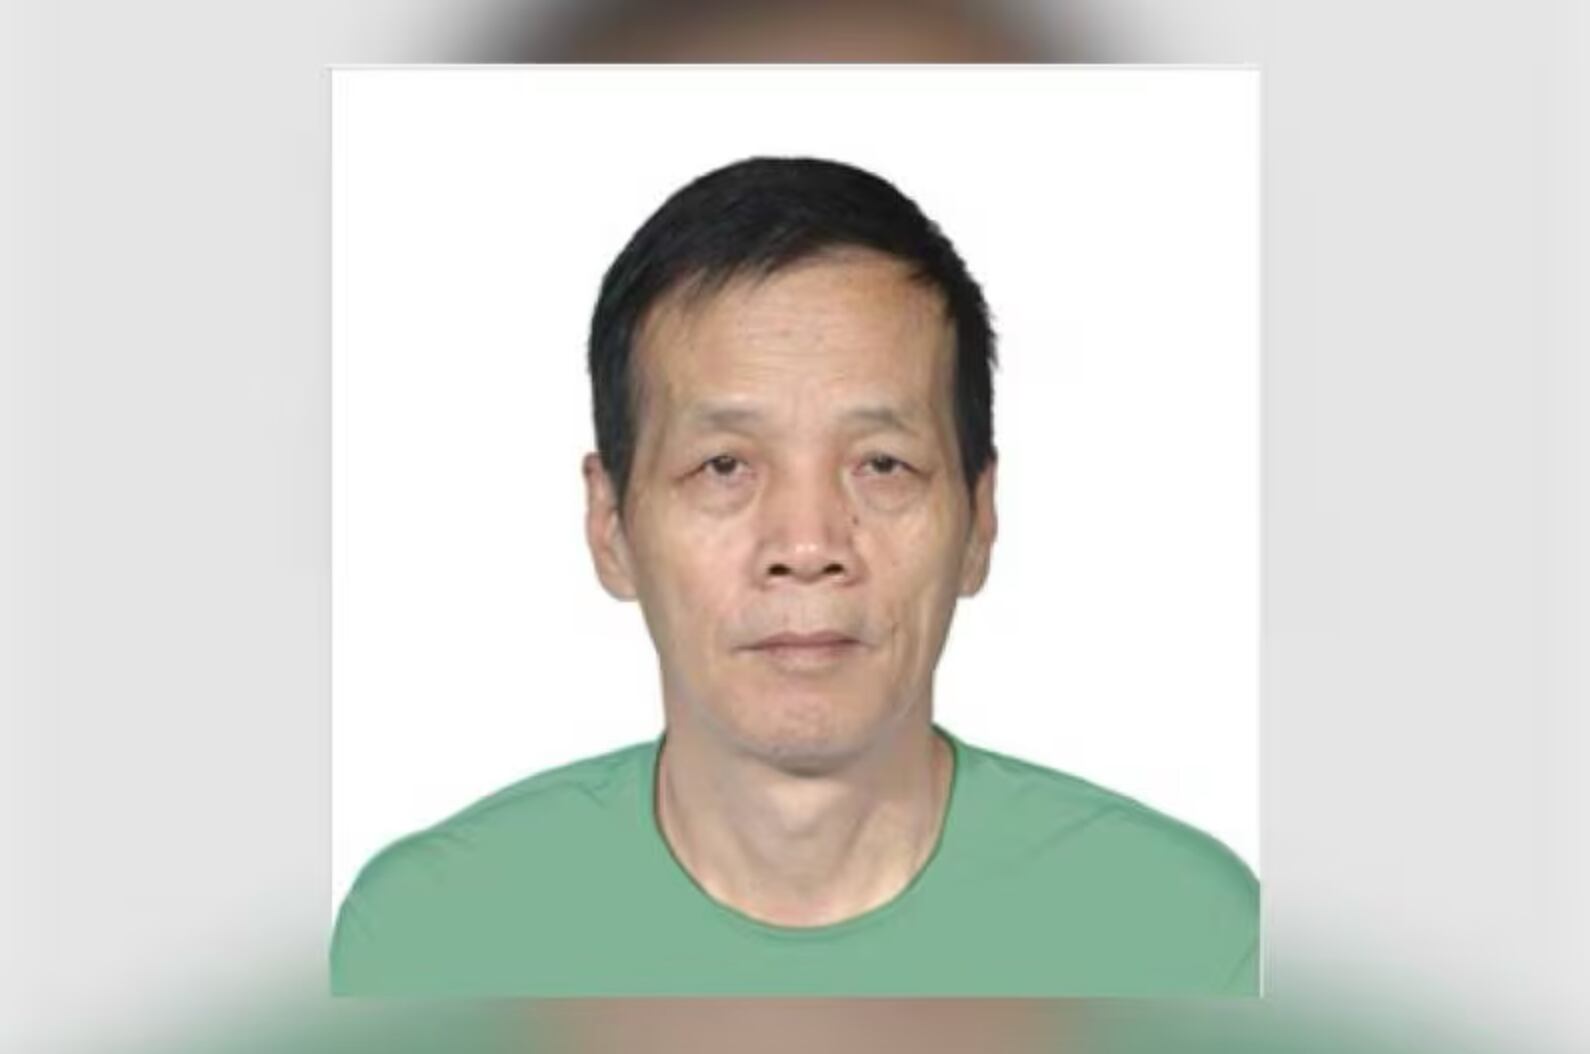 La DEA ha ofrecido una recompensa de cinco millones de dólares a quien proporcione información sobre el paradero de Chuen Fat Yip.